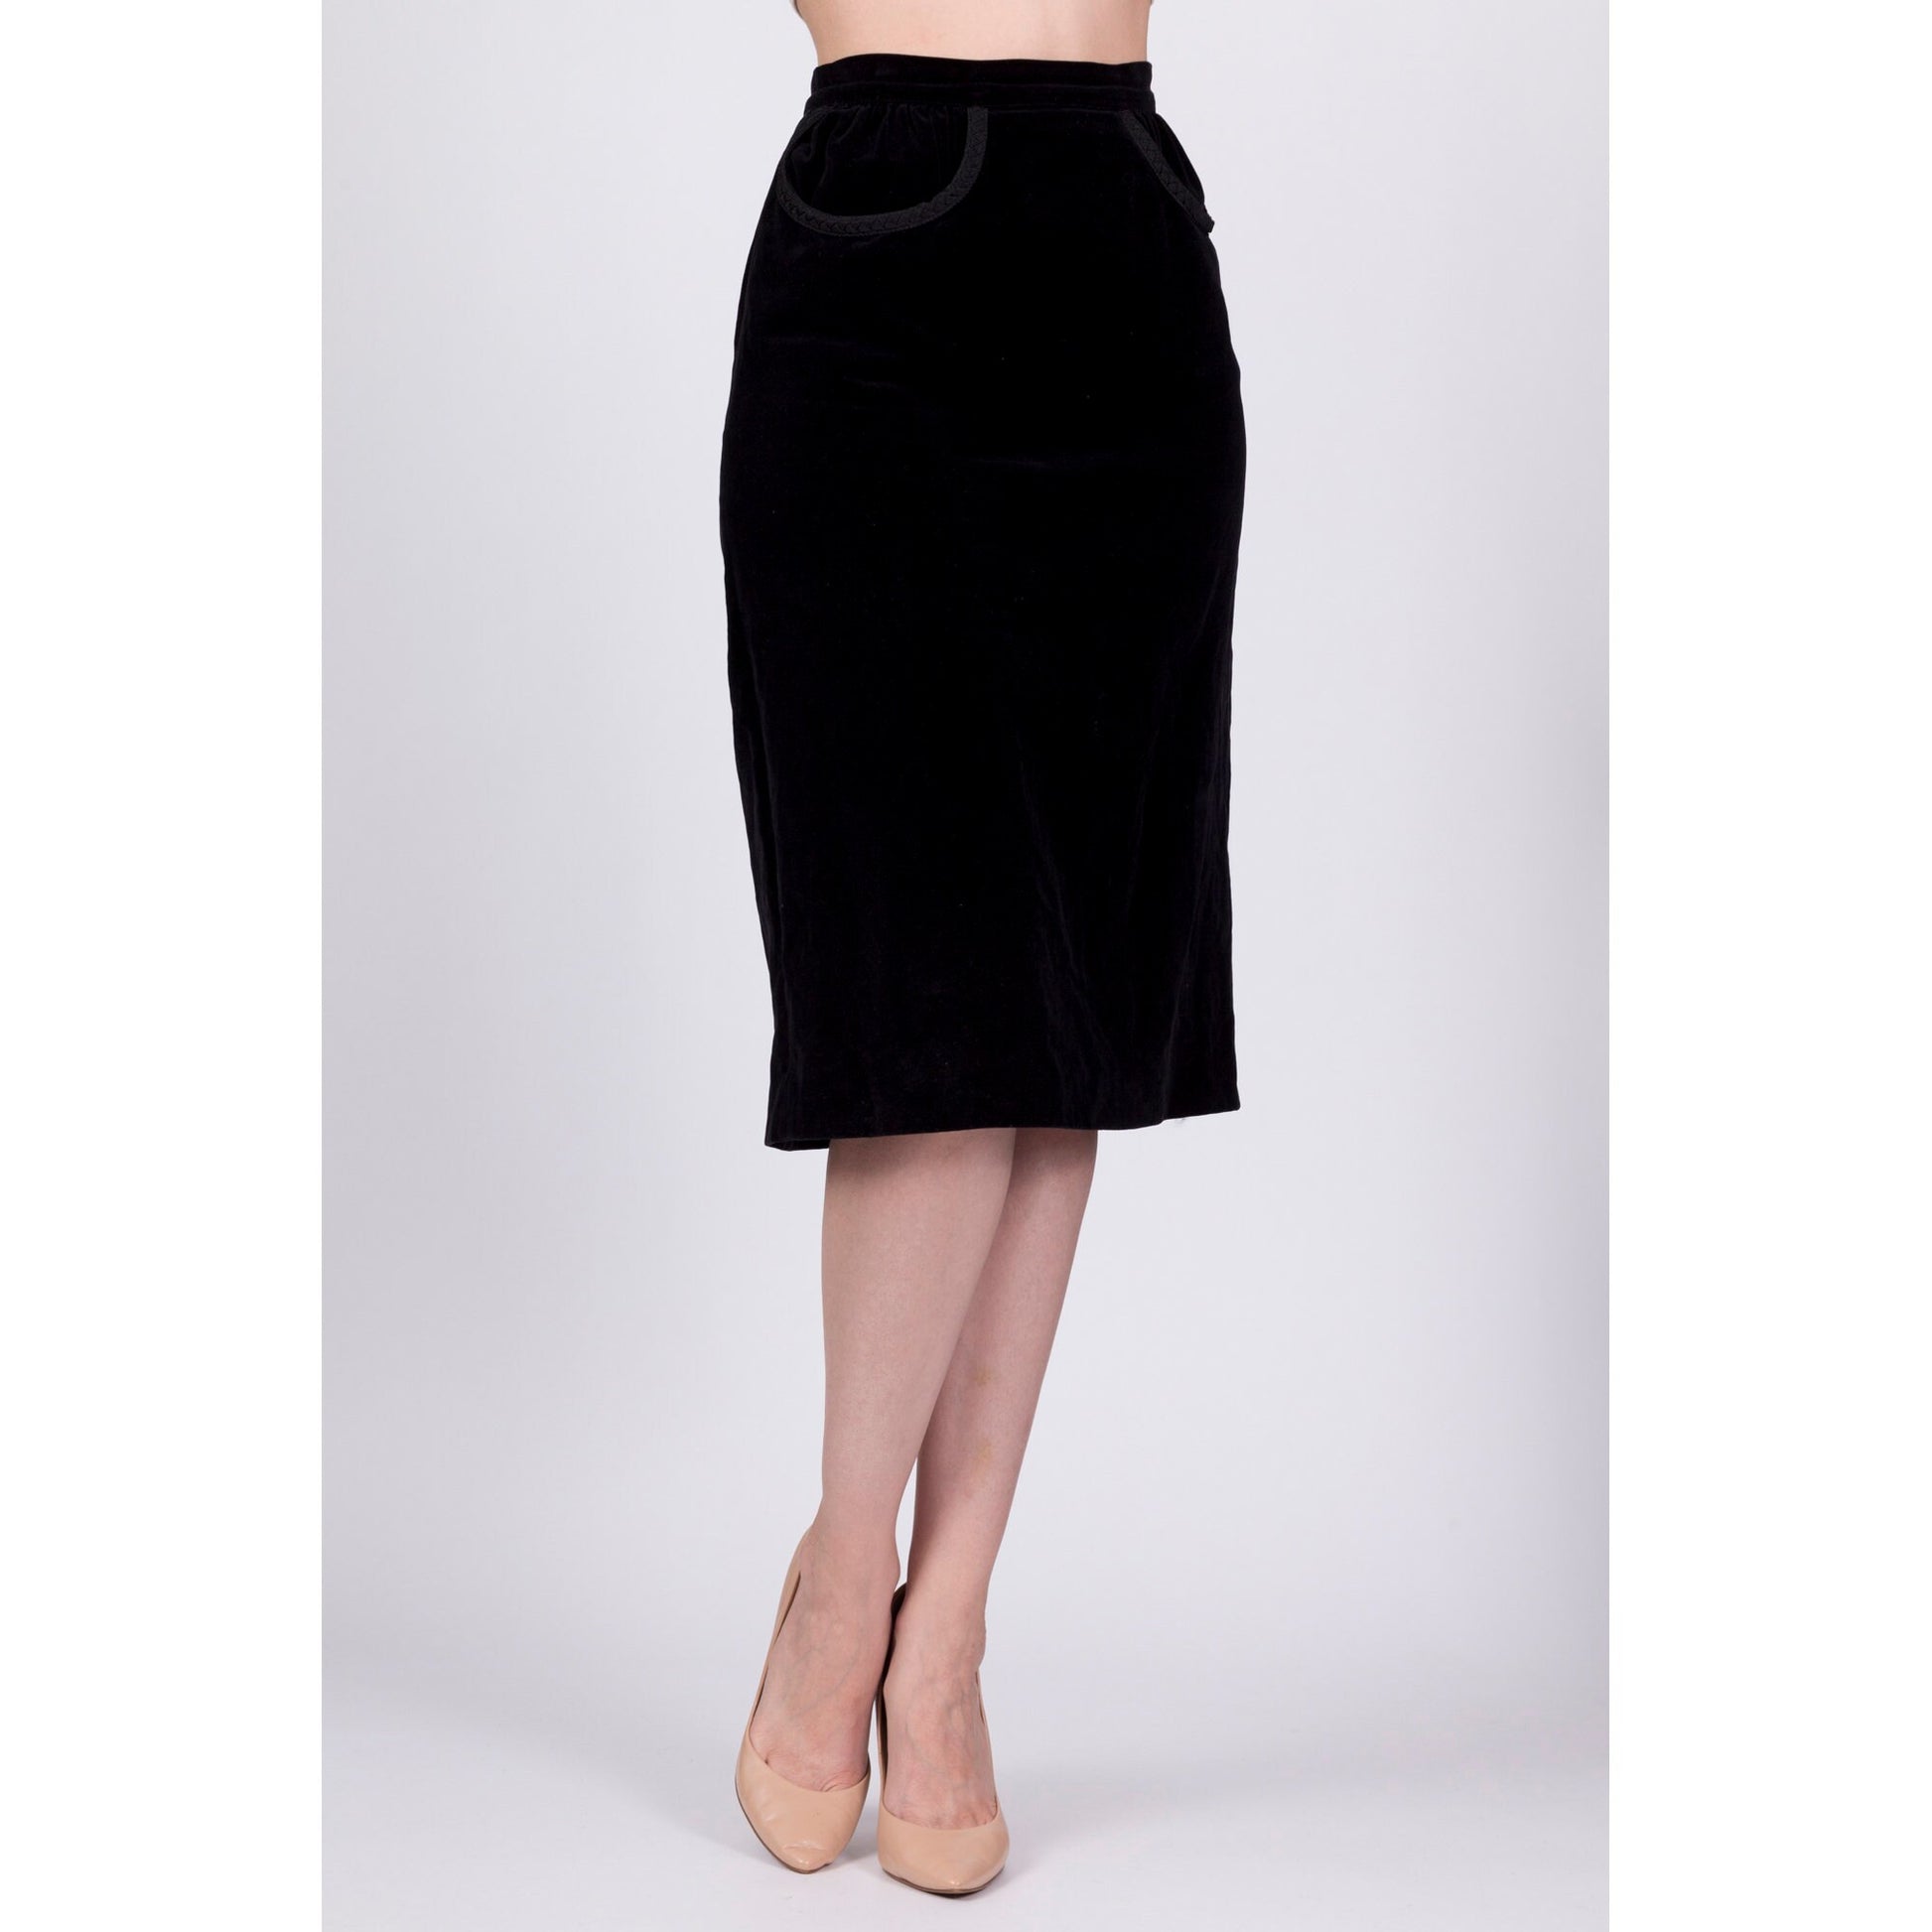 1960s Black Velvet Knee Length Skirt - Extra Small, 25" 